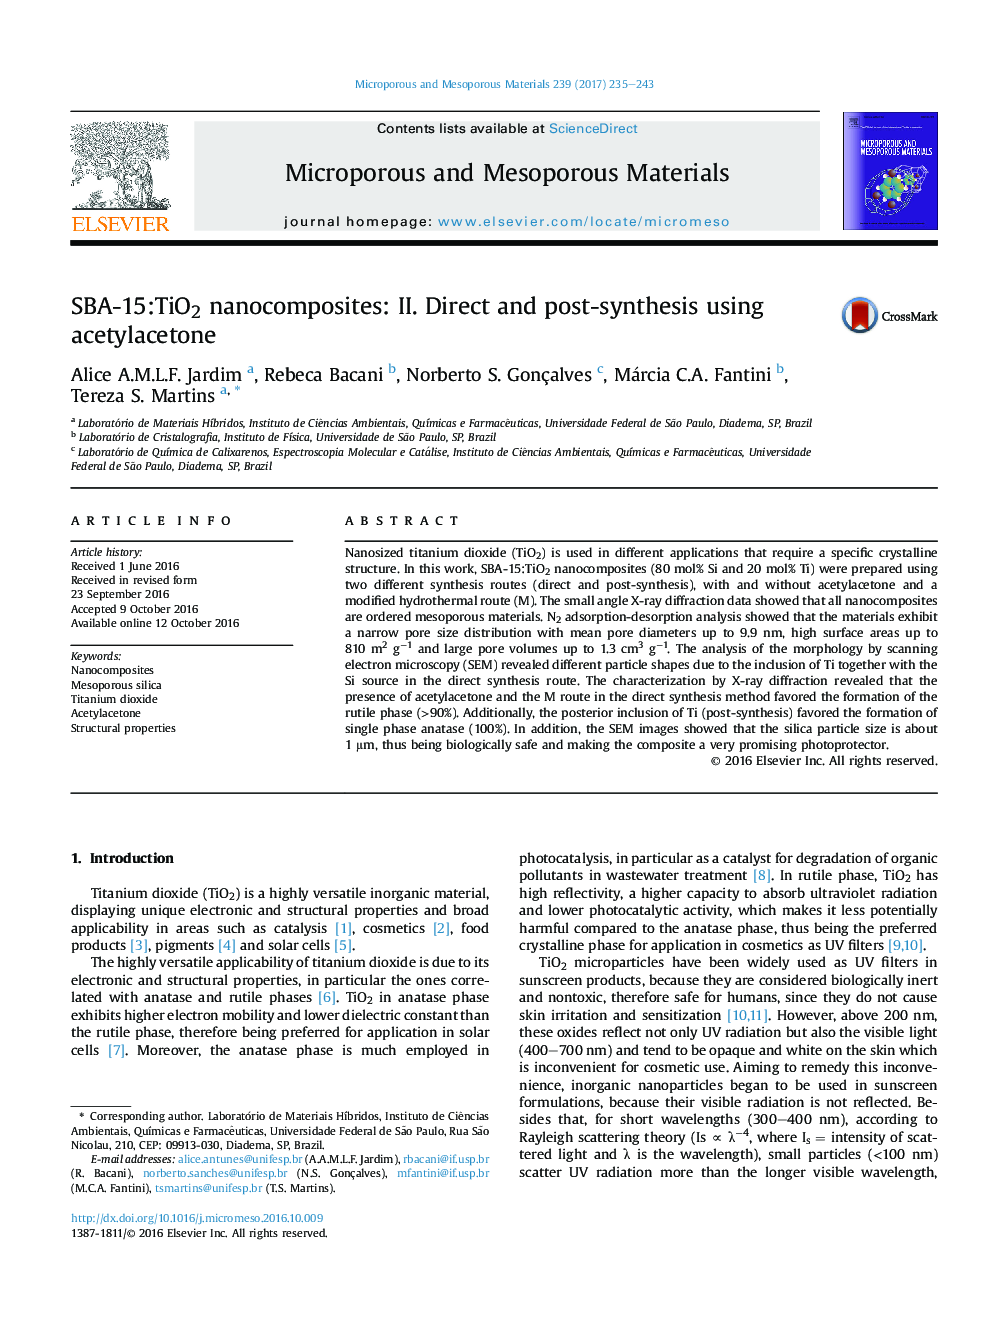 SBA-15:TiO2 nanocomposites: II. Direct and post-synthesis using acetylacetone